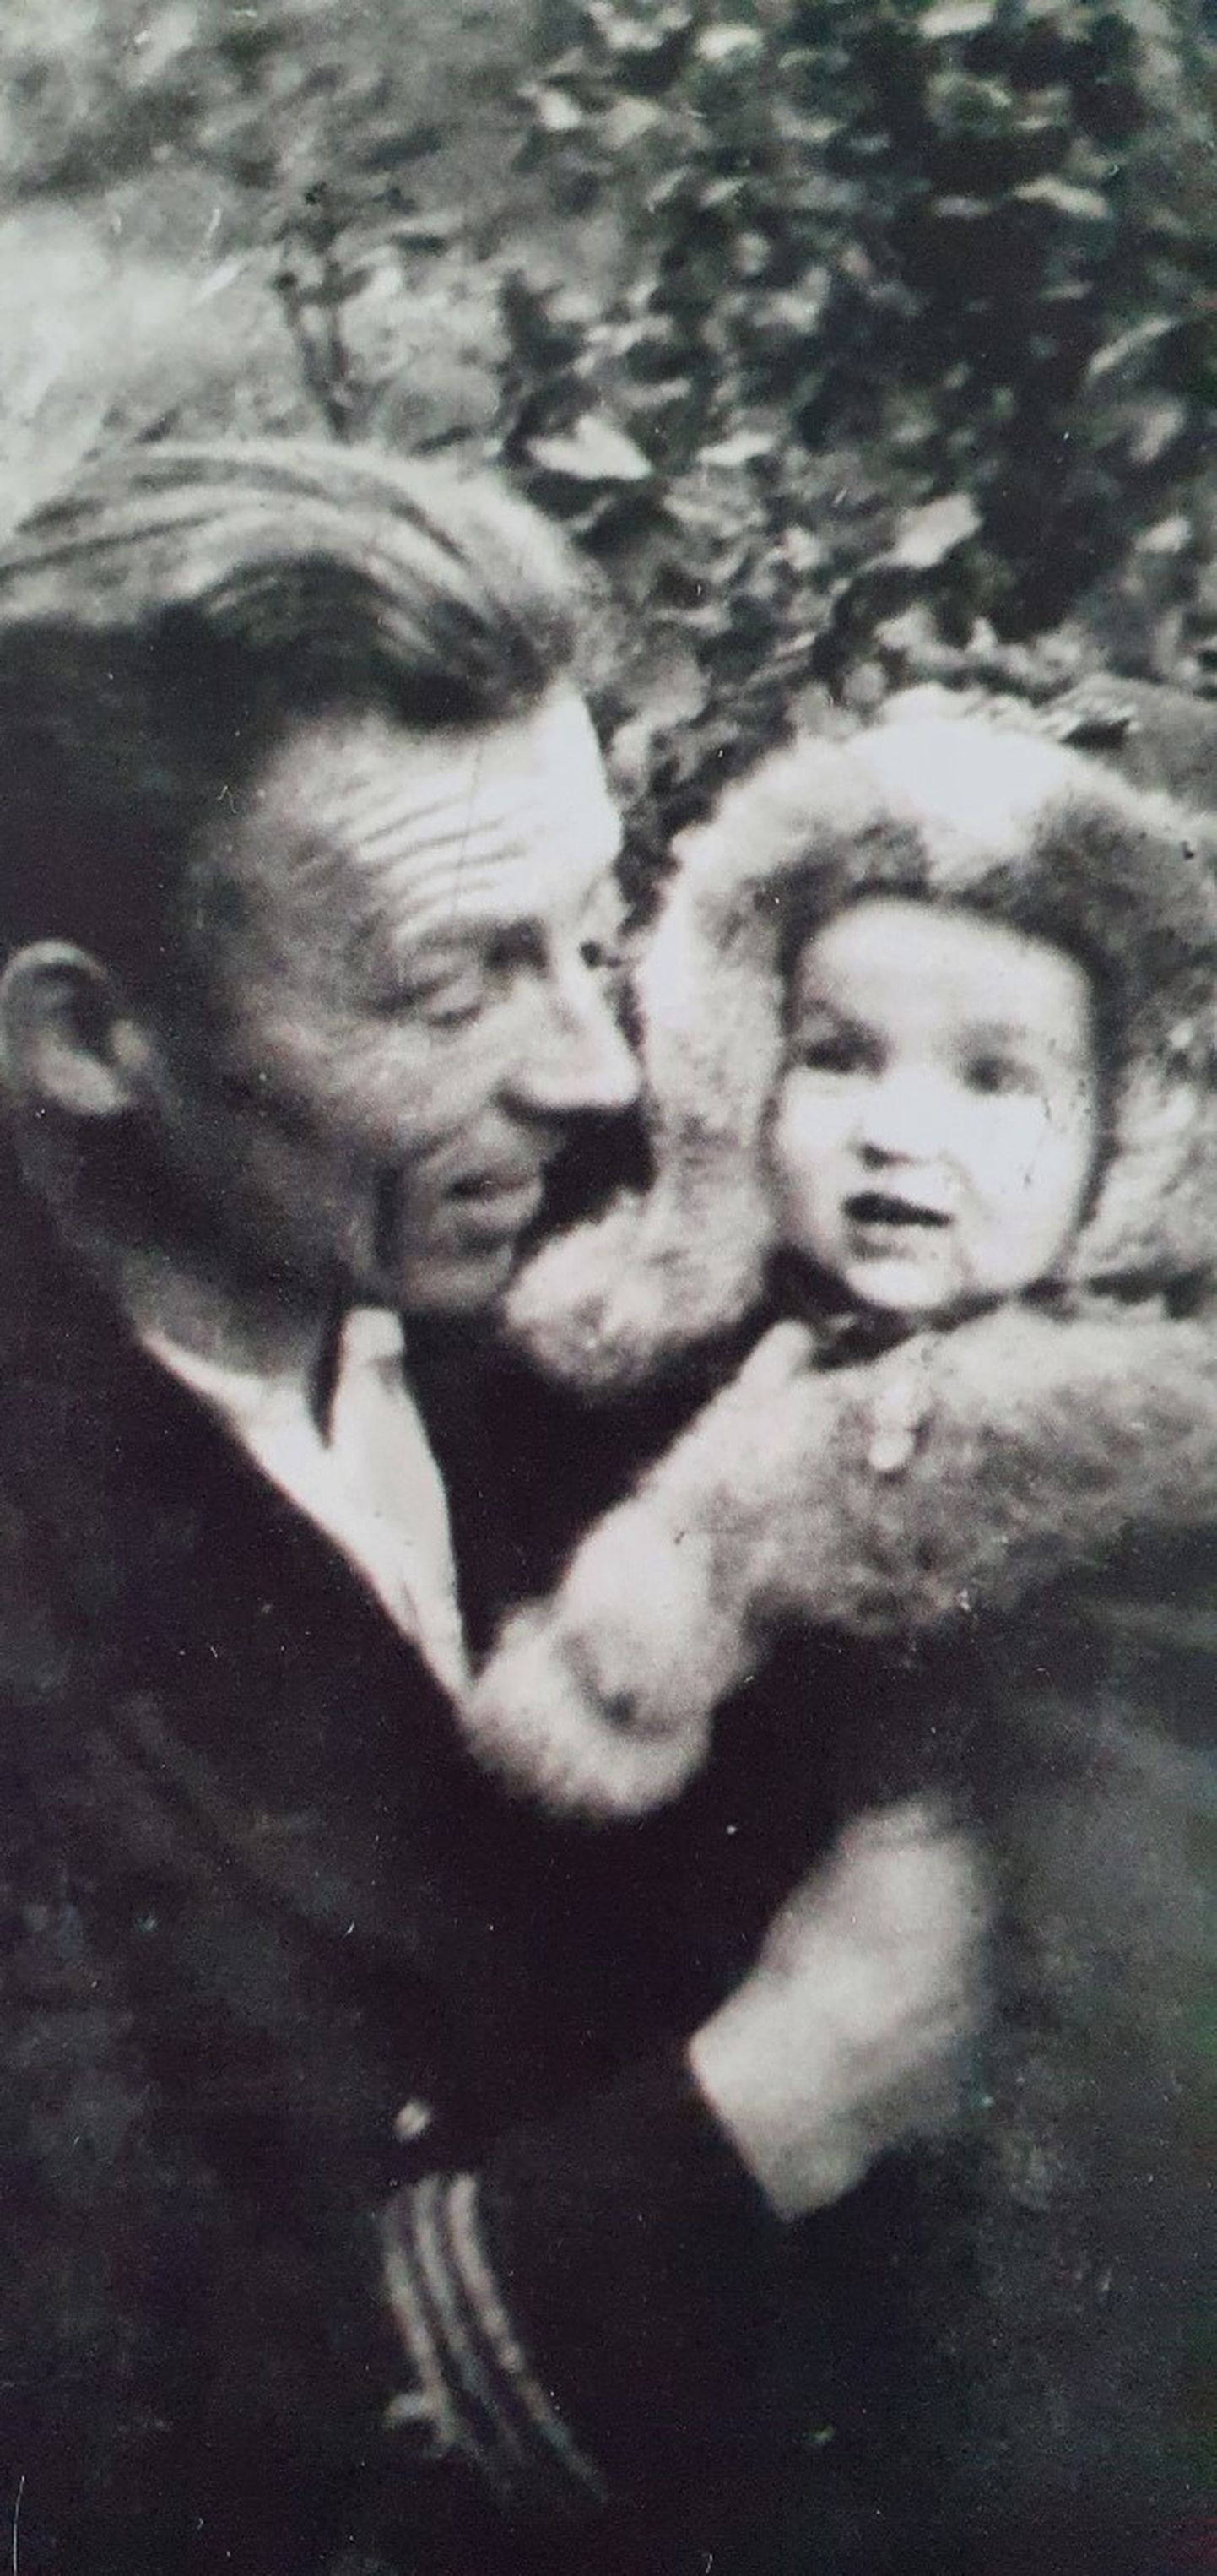 Isa oma tütar Ruthiga, kes on Kasahstanist Eestisse jõudnud. 1950